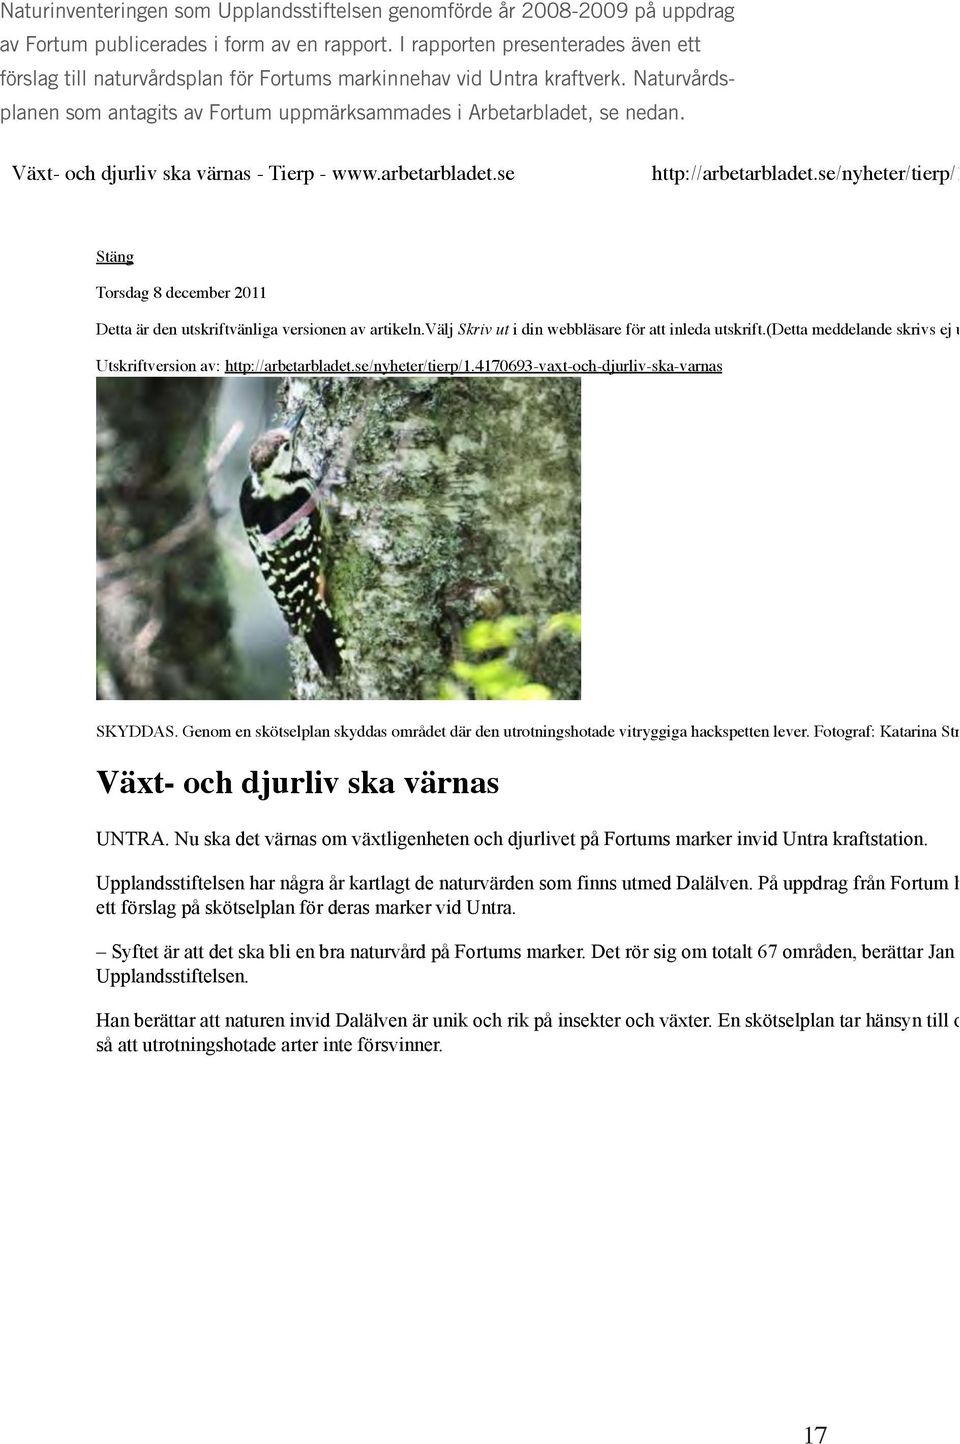 Växt- och djurliv ska värnas - Tierp - www.arbetarbladet.se http://arbetarbladet.se/nyheter/tierp/1.4170693-vaxt-oc Stäng Torsdag 8 december 2011 Detta är den utskriftvänliga versionen av artikeln.